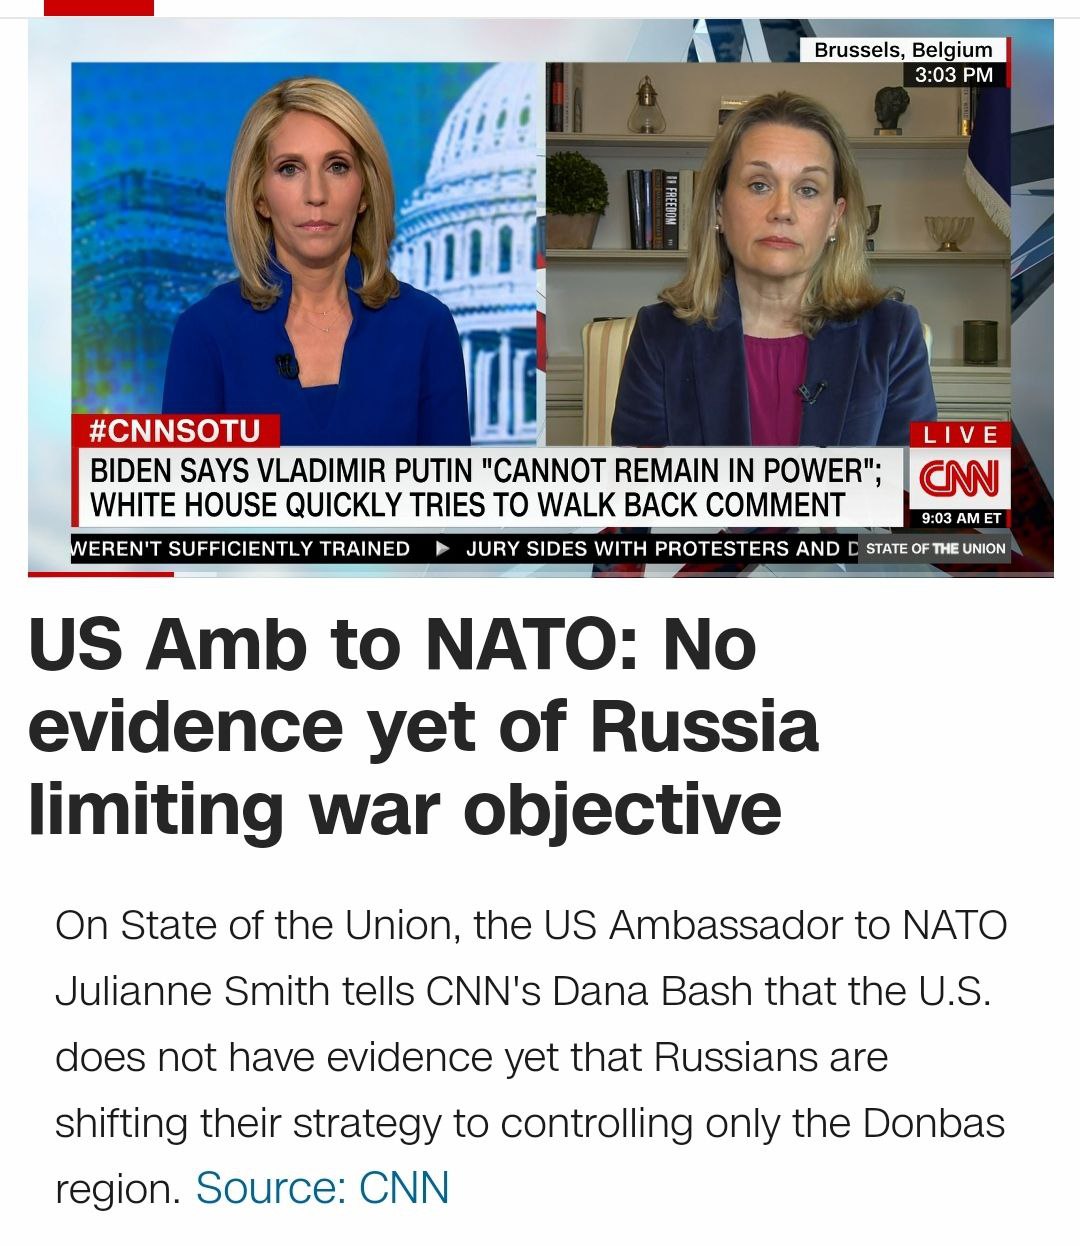 У США нет доказательств изменения стратегии Россией